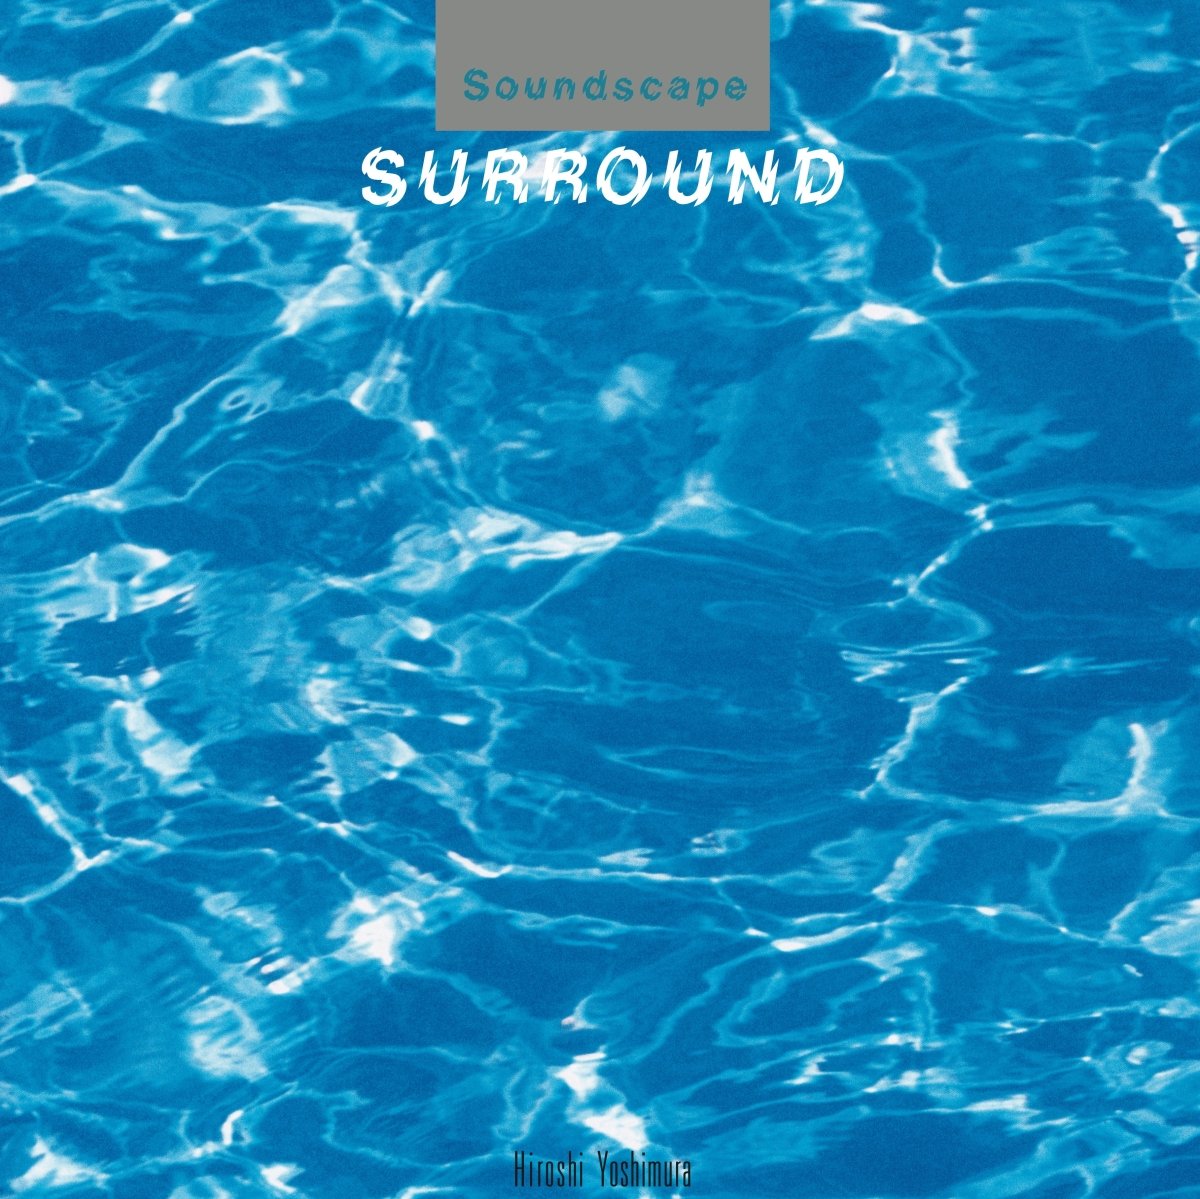 Surround - Hiroshi Yoshimura-Audio-Exchange